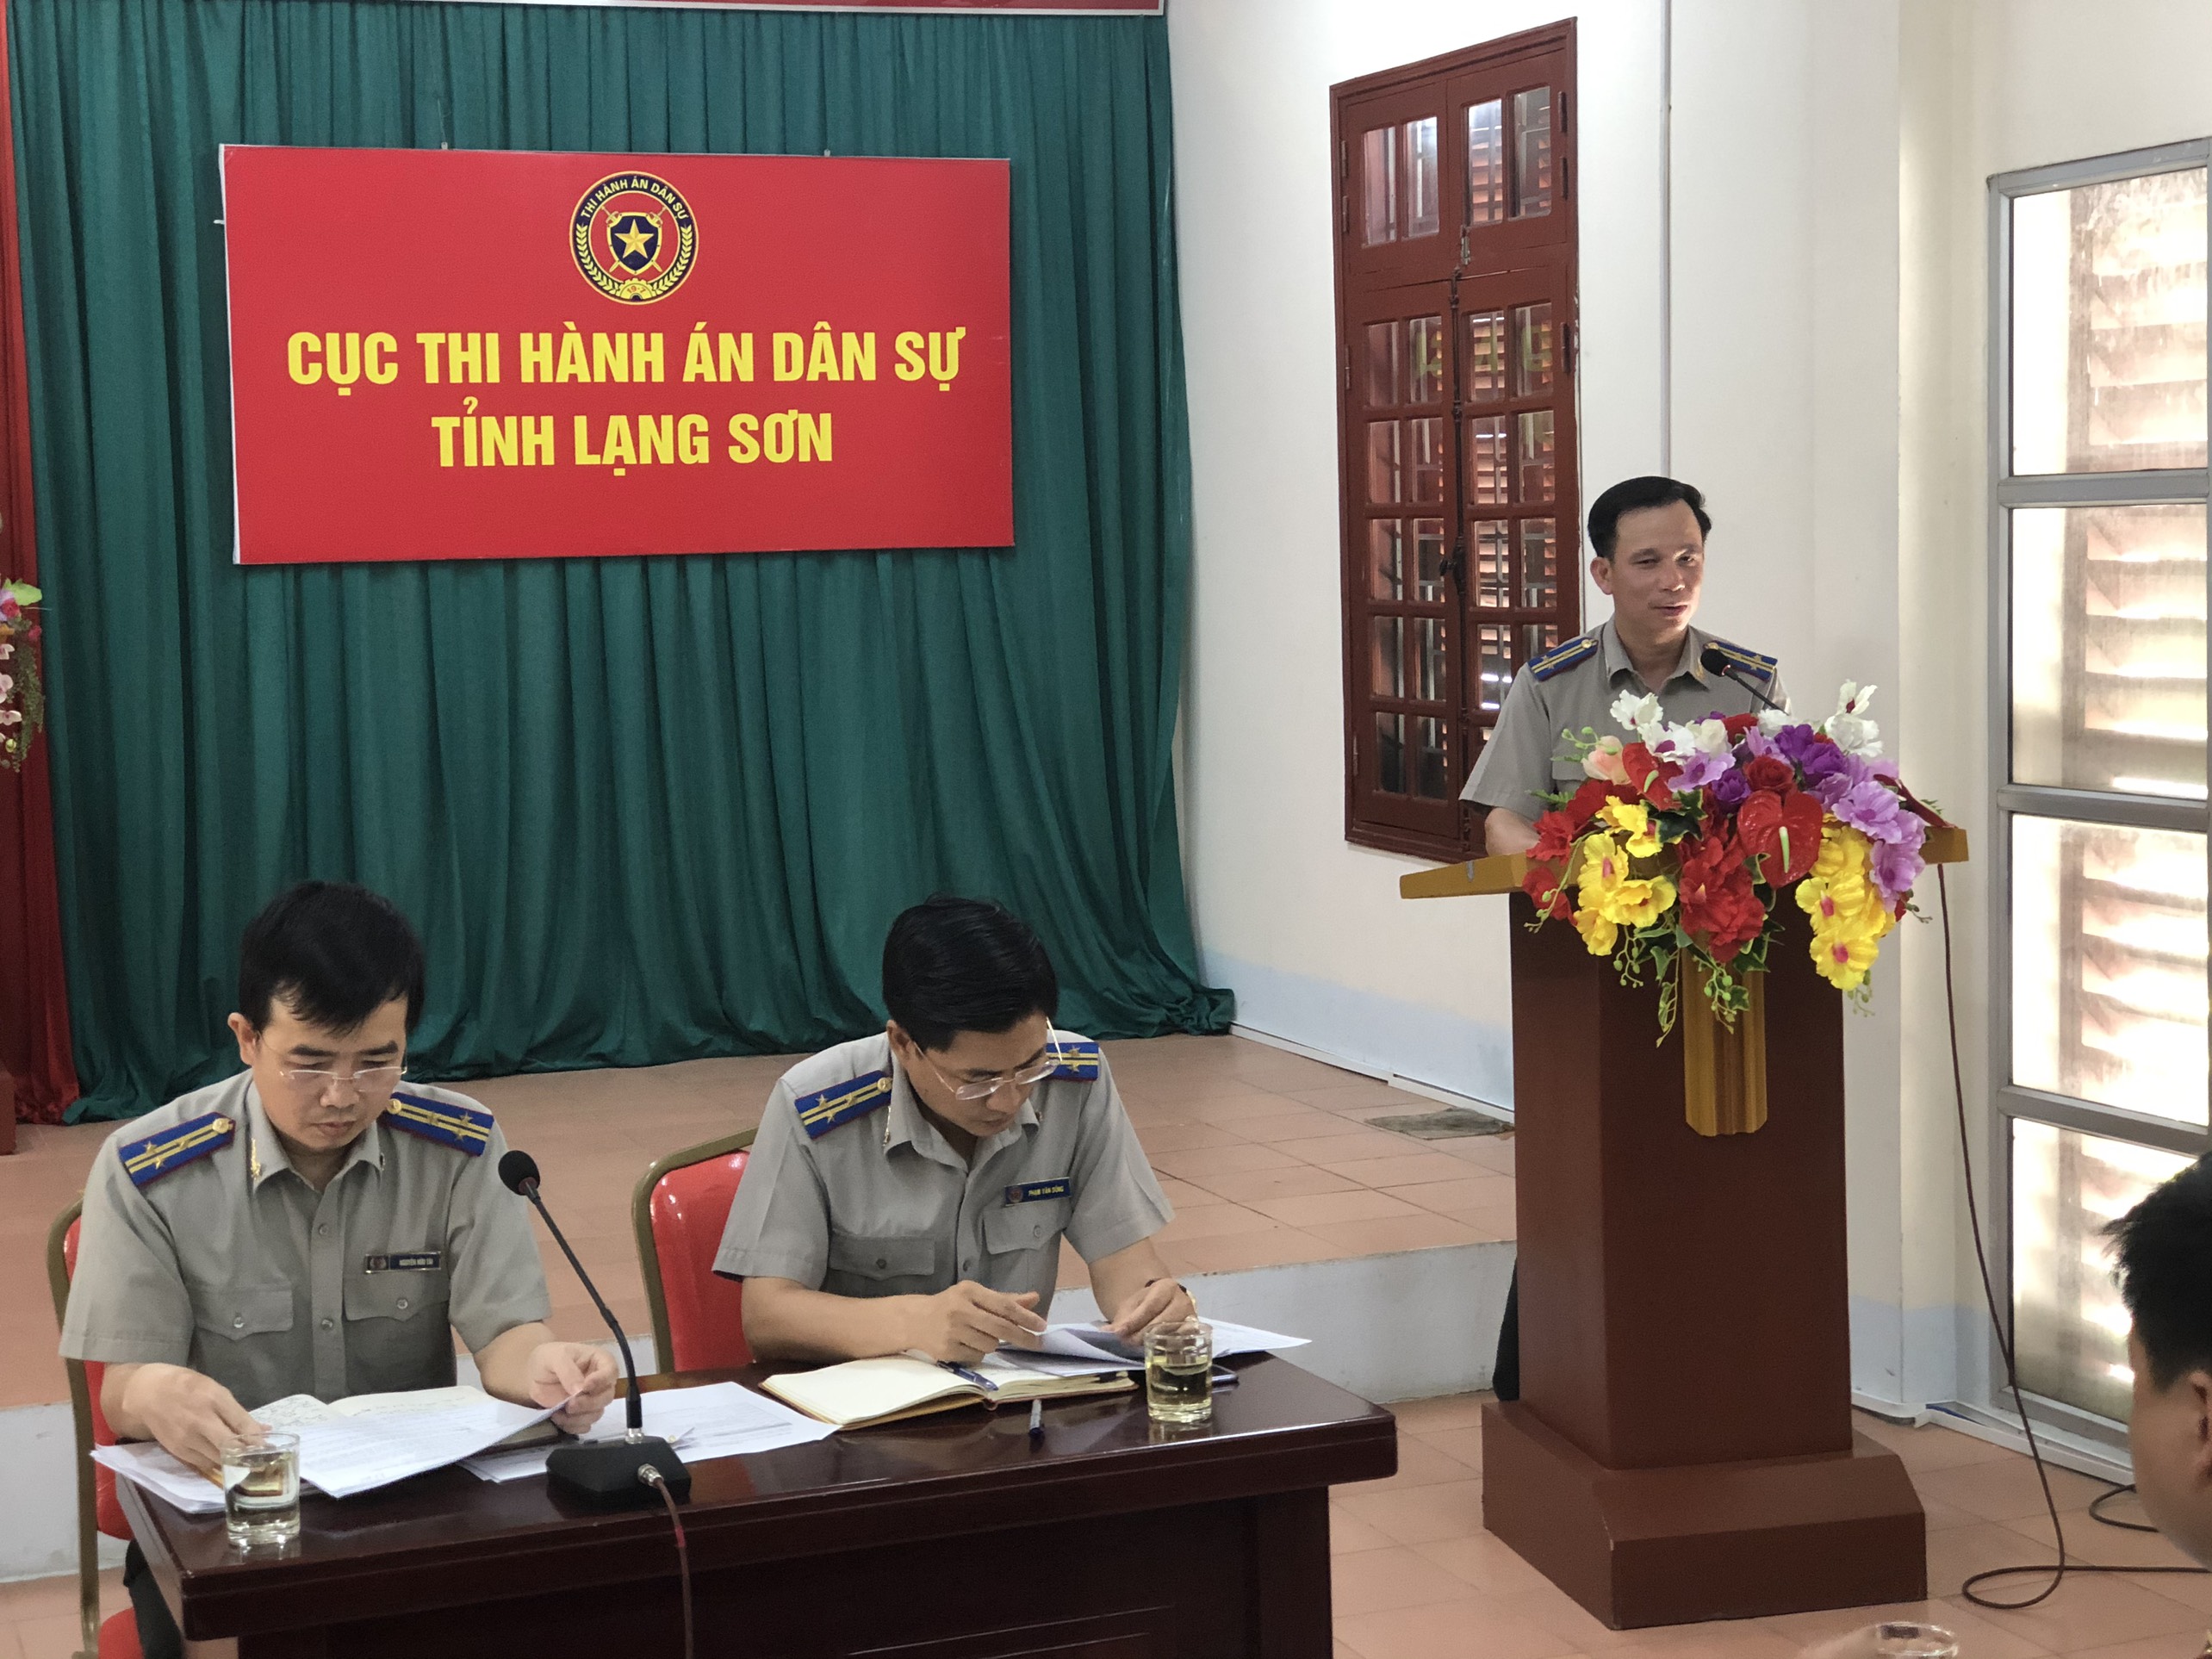 Cục THADS tỉnh Lạng Sơn tổ chức Hội nghị biểu dương điển hình tiên tiến cấp cơ sở giai đoạn 2015-2020, Hội nghị sơ kết công tác thi hành án dân sự 6 tháng đầu năm 2020